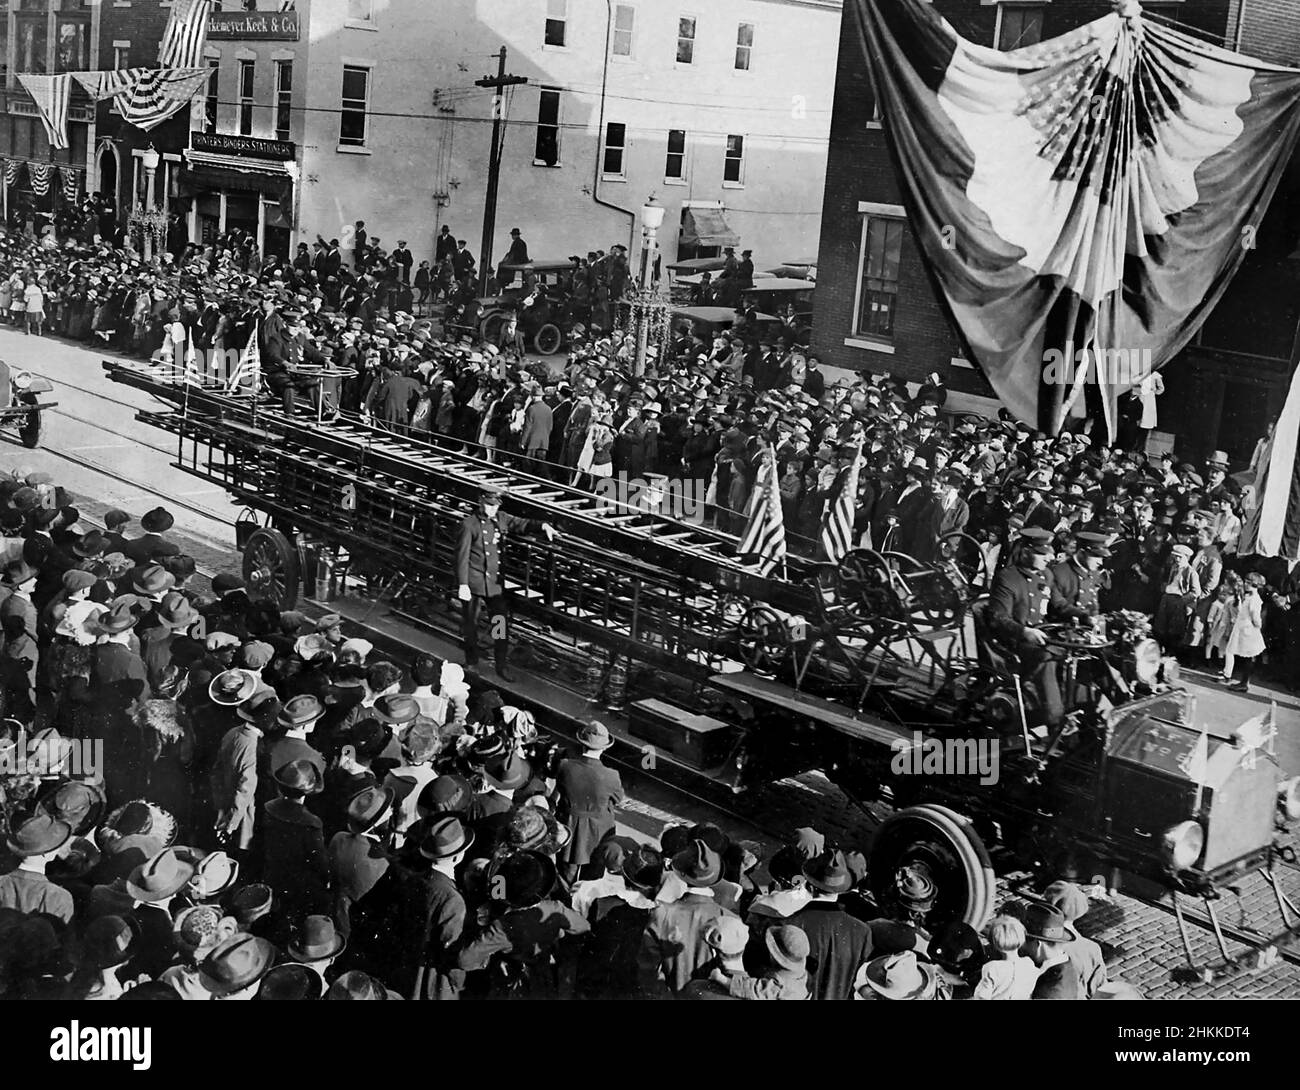 Bei einer Parade am 4th. Juli in Allentown, Pennsylvania, wird ein früher Leiter der Feuerwehr gezeigt. 1920. Stockfoto